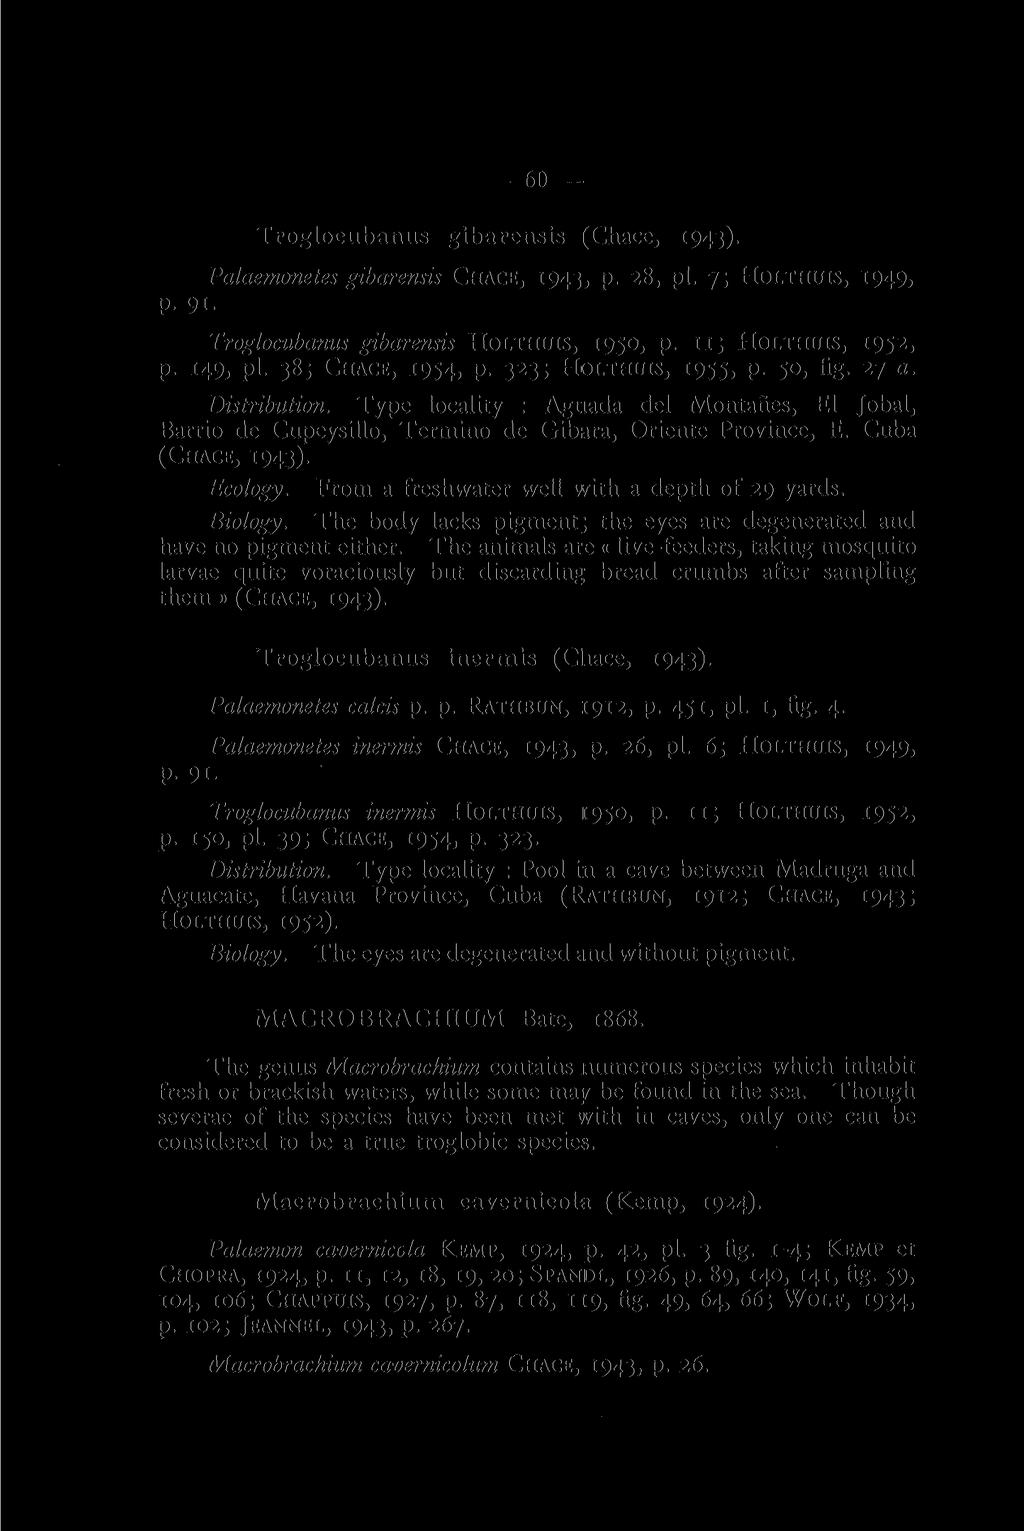 60 Troglocubanus gibarensis (Chace, 1943). Palaemonetes gibarensis CHACE, 1943, p. 28, pi. 7; HOLTHUIS, 1949, P- 9i- Troglocubanus gibarensis HOLTHUIS, 1950, p. 11; HOLTHUIS, 1952, p. 149, pi.